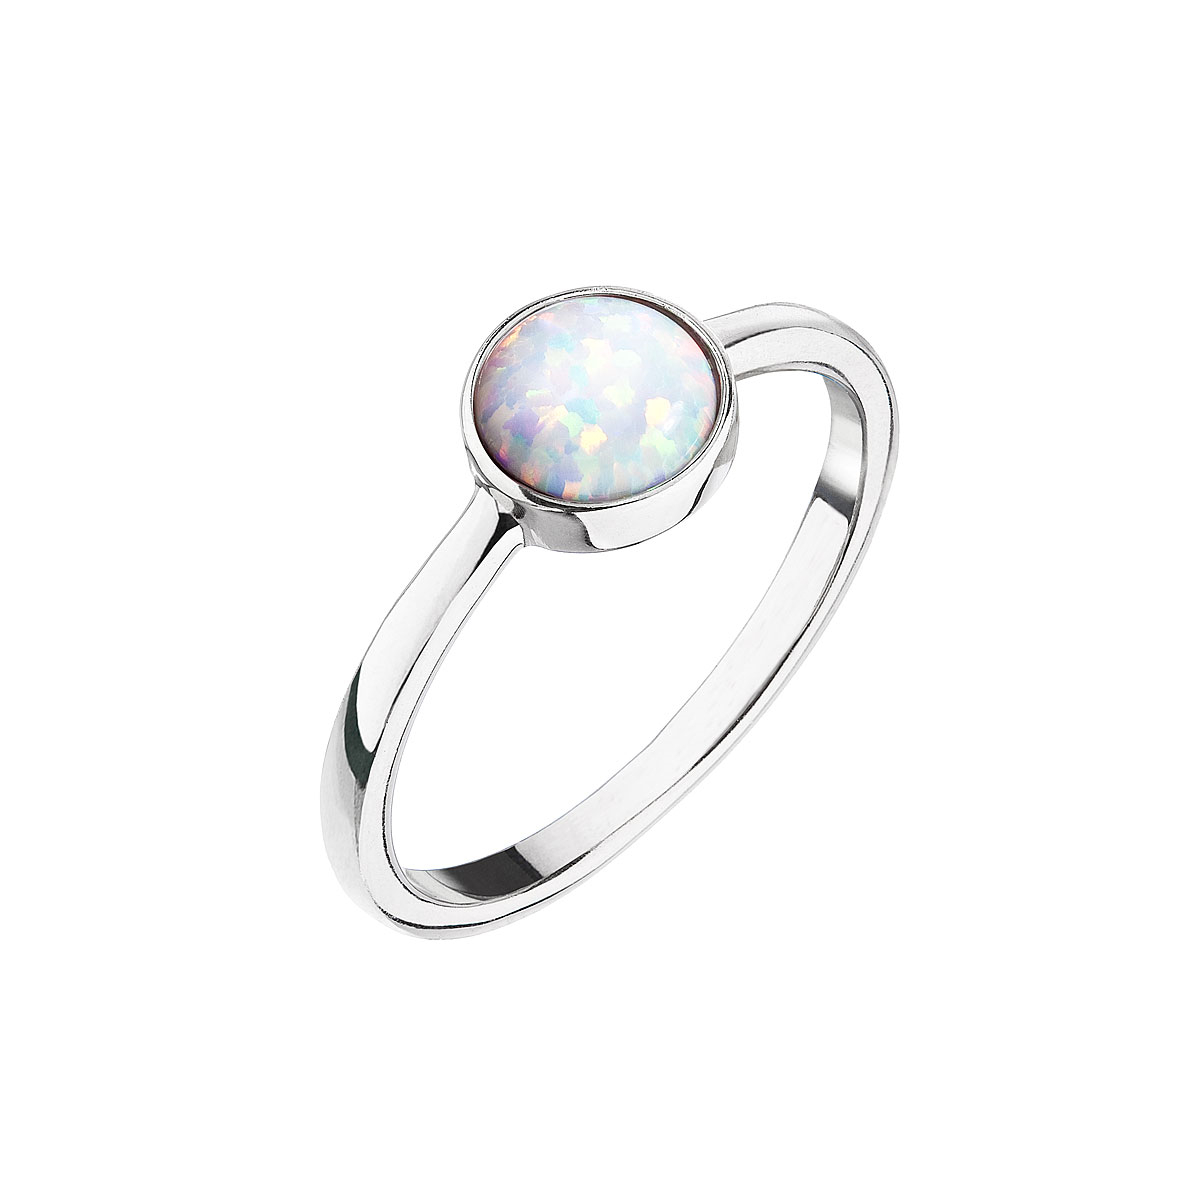 Strieborný prsteň so bielym opálom